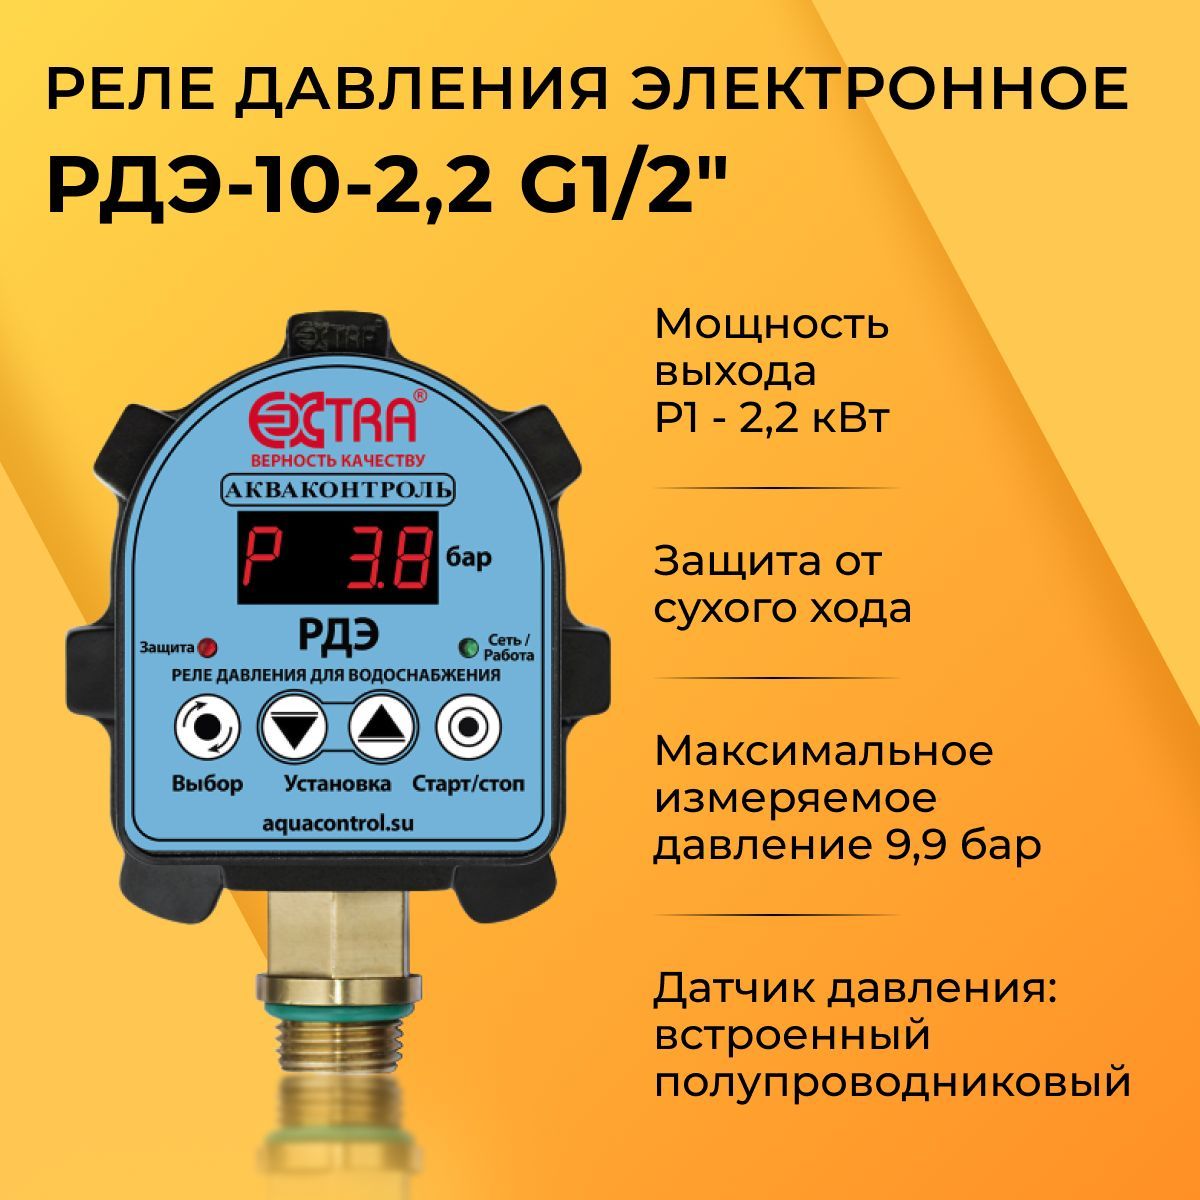 Реле давления электронное купить. РДЭ-10-2,2 реле давления воды чертеж. Автоматика для насоса. Инструкция электронного реле давления воды. РДЭ Акваконтроль запчасти для ремонта.